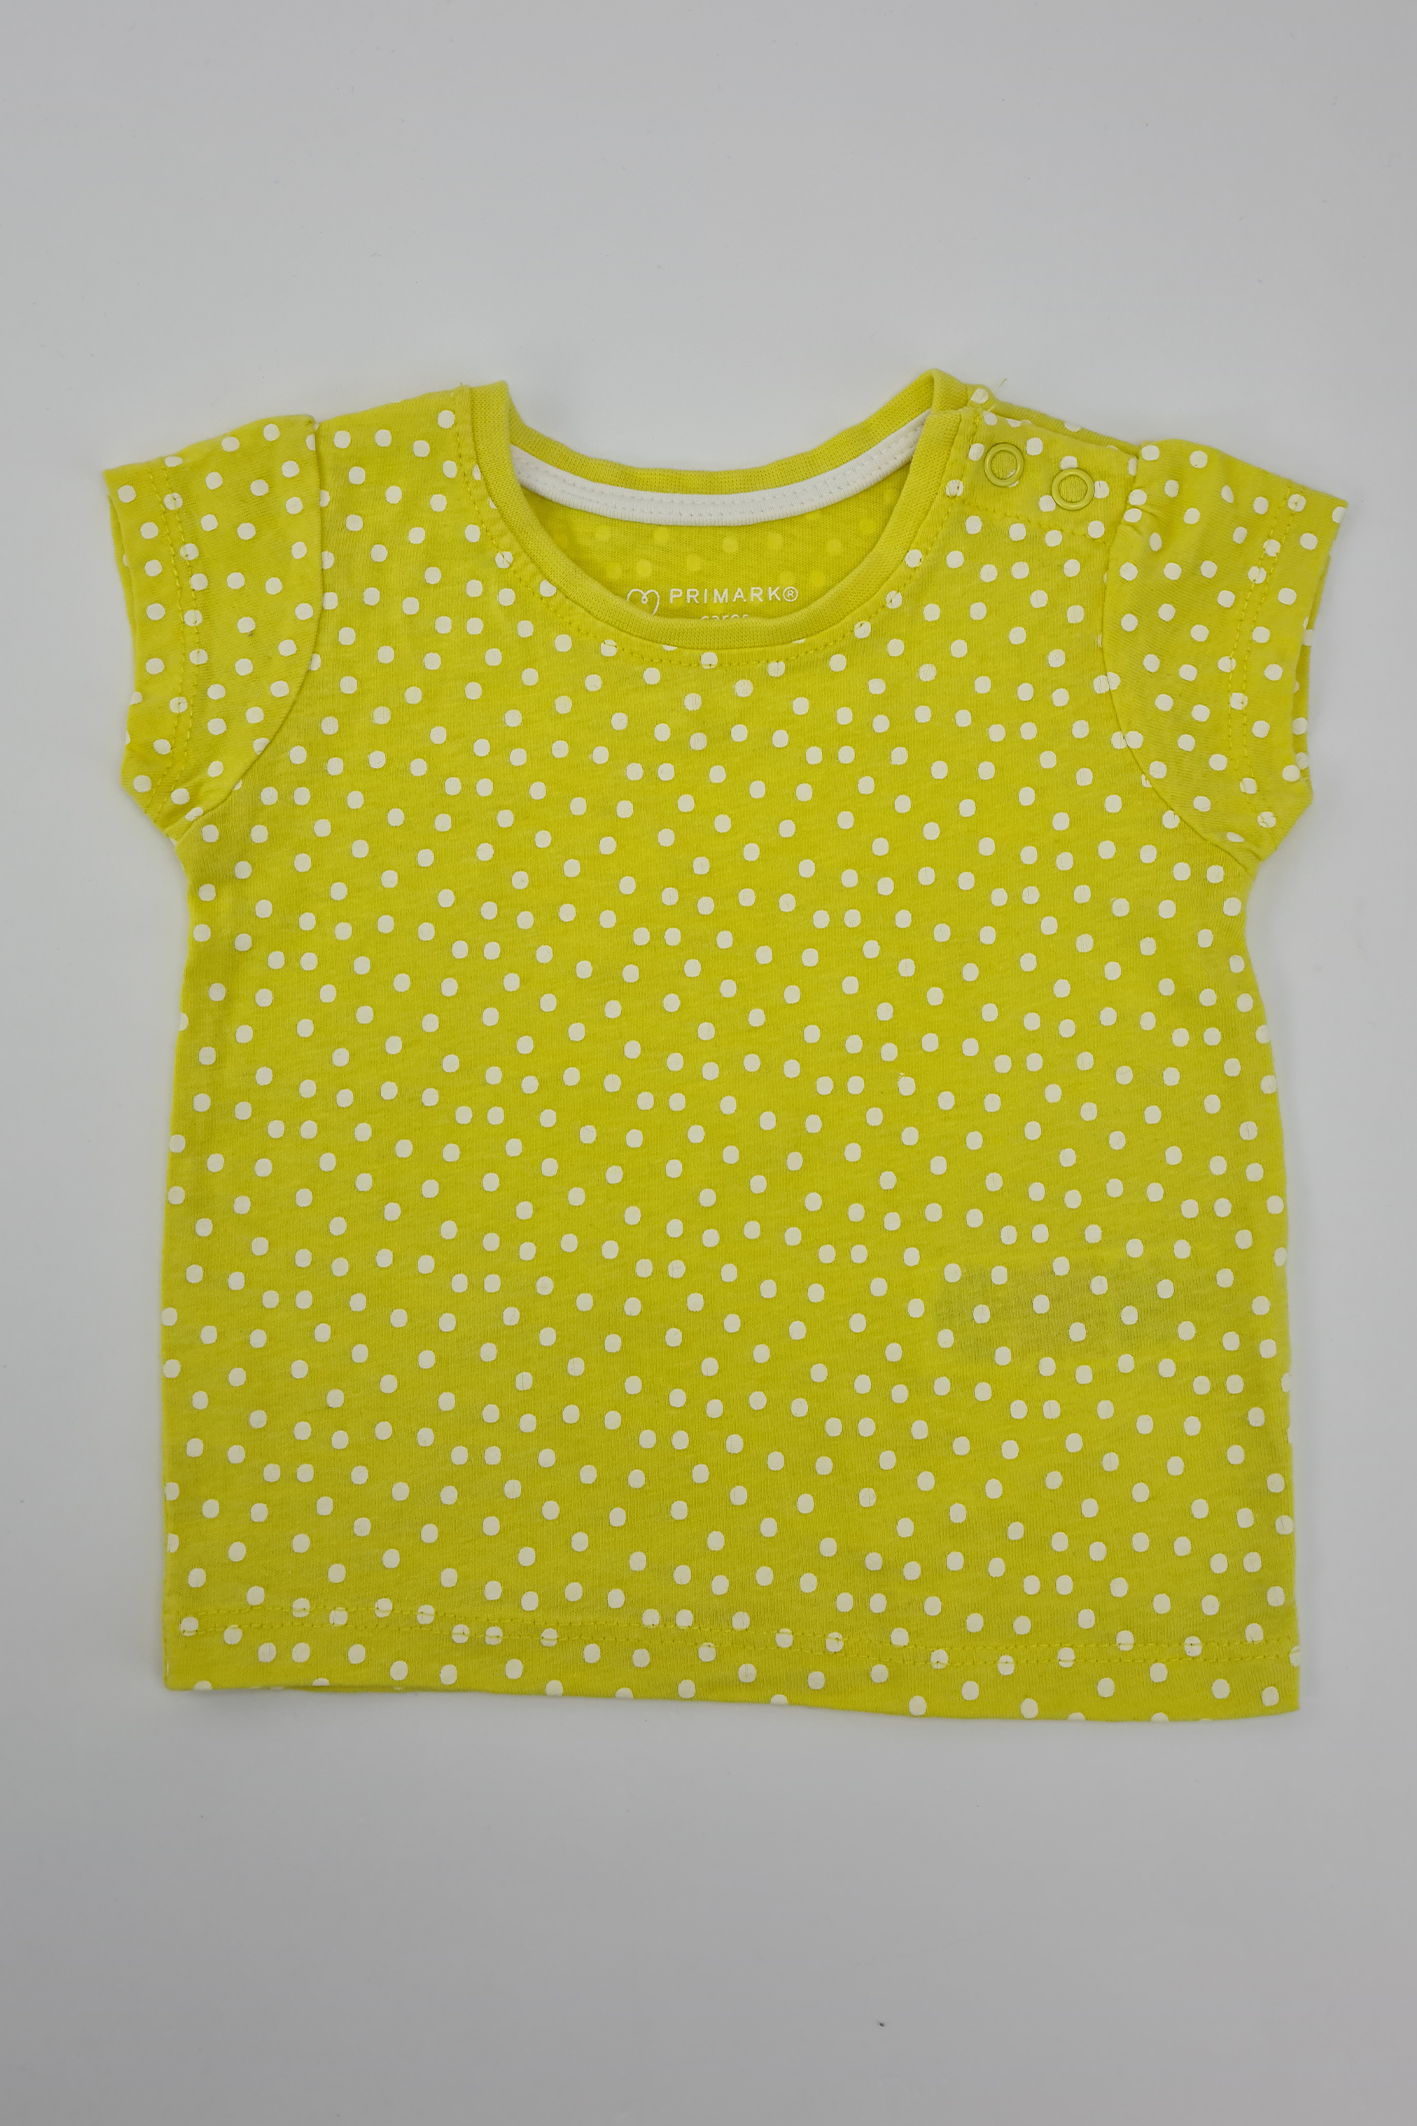 3-6 mois - T-shirt imprimé à pois jaunes (Primark). 100% Coton.